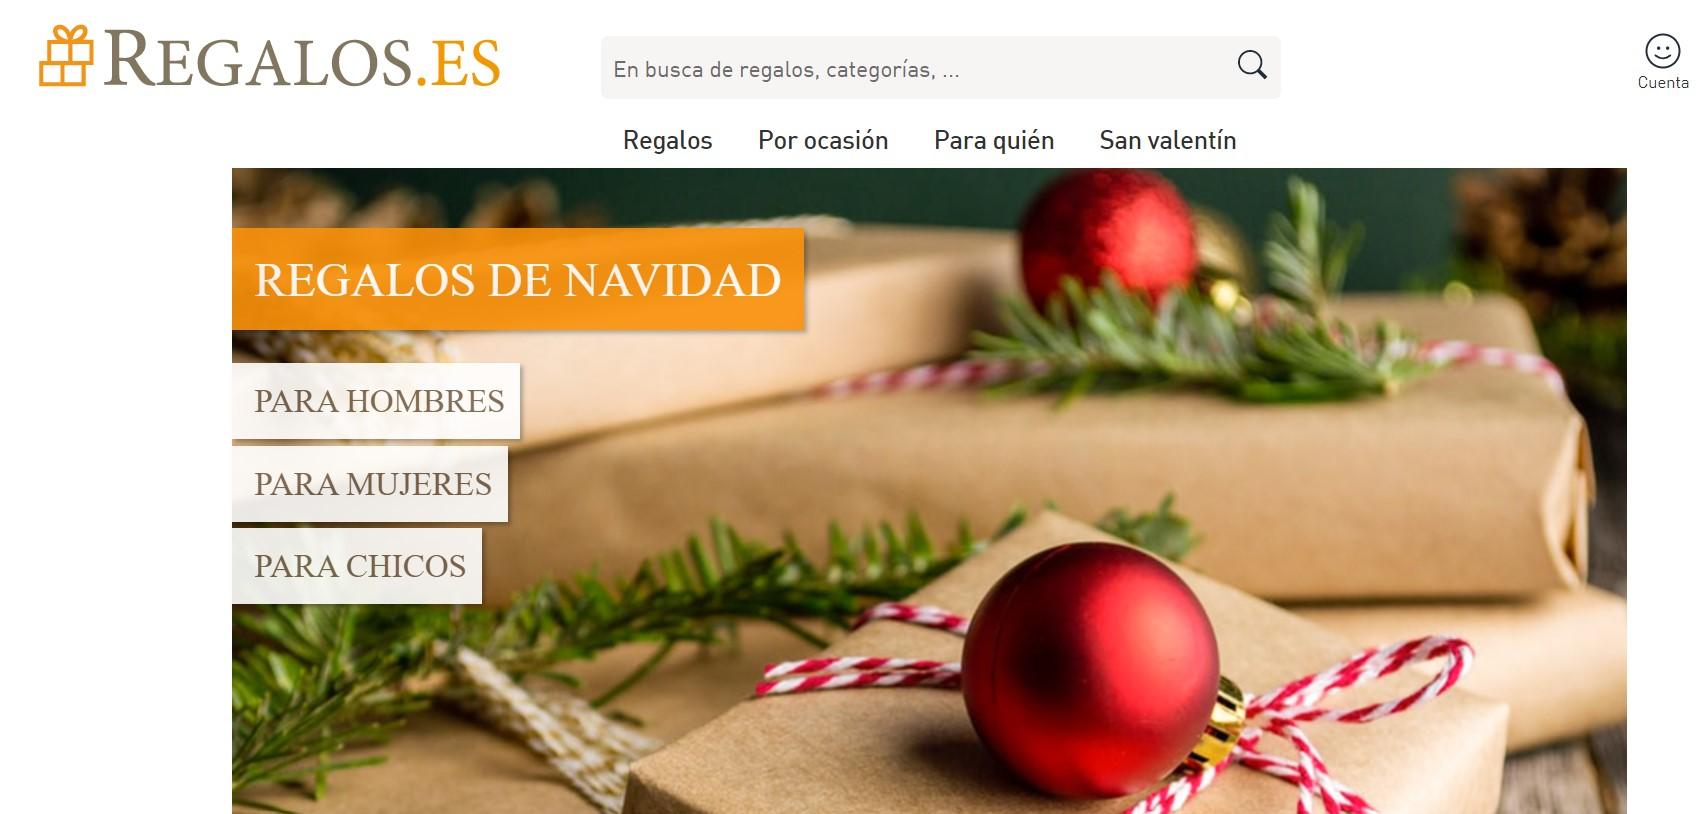 Capilares en lema Mejores webs para comprar y enviar regalos a domicilio